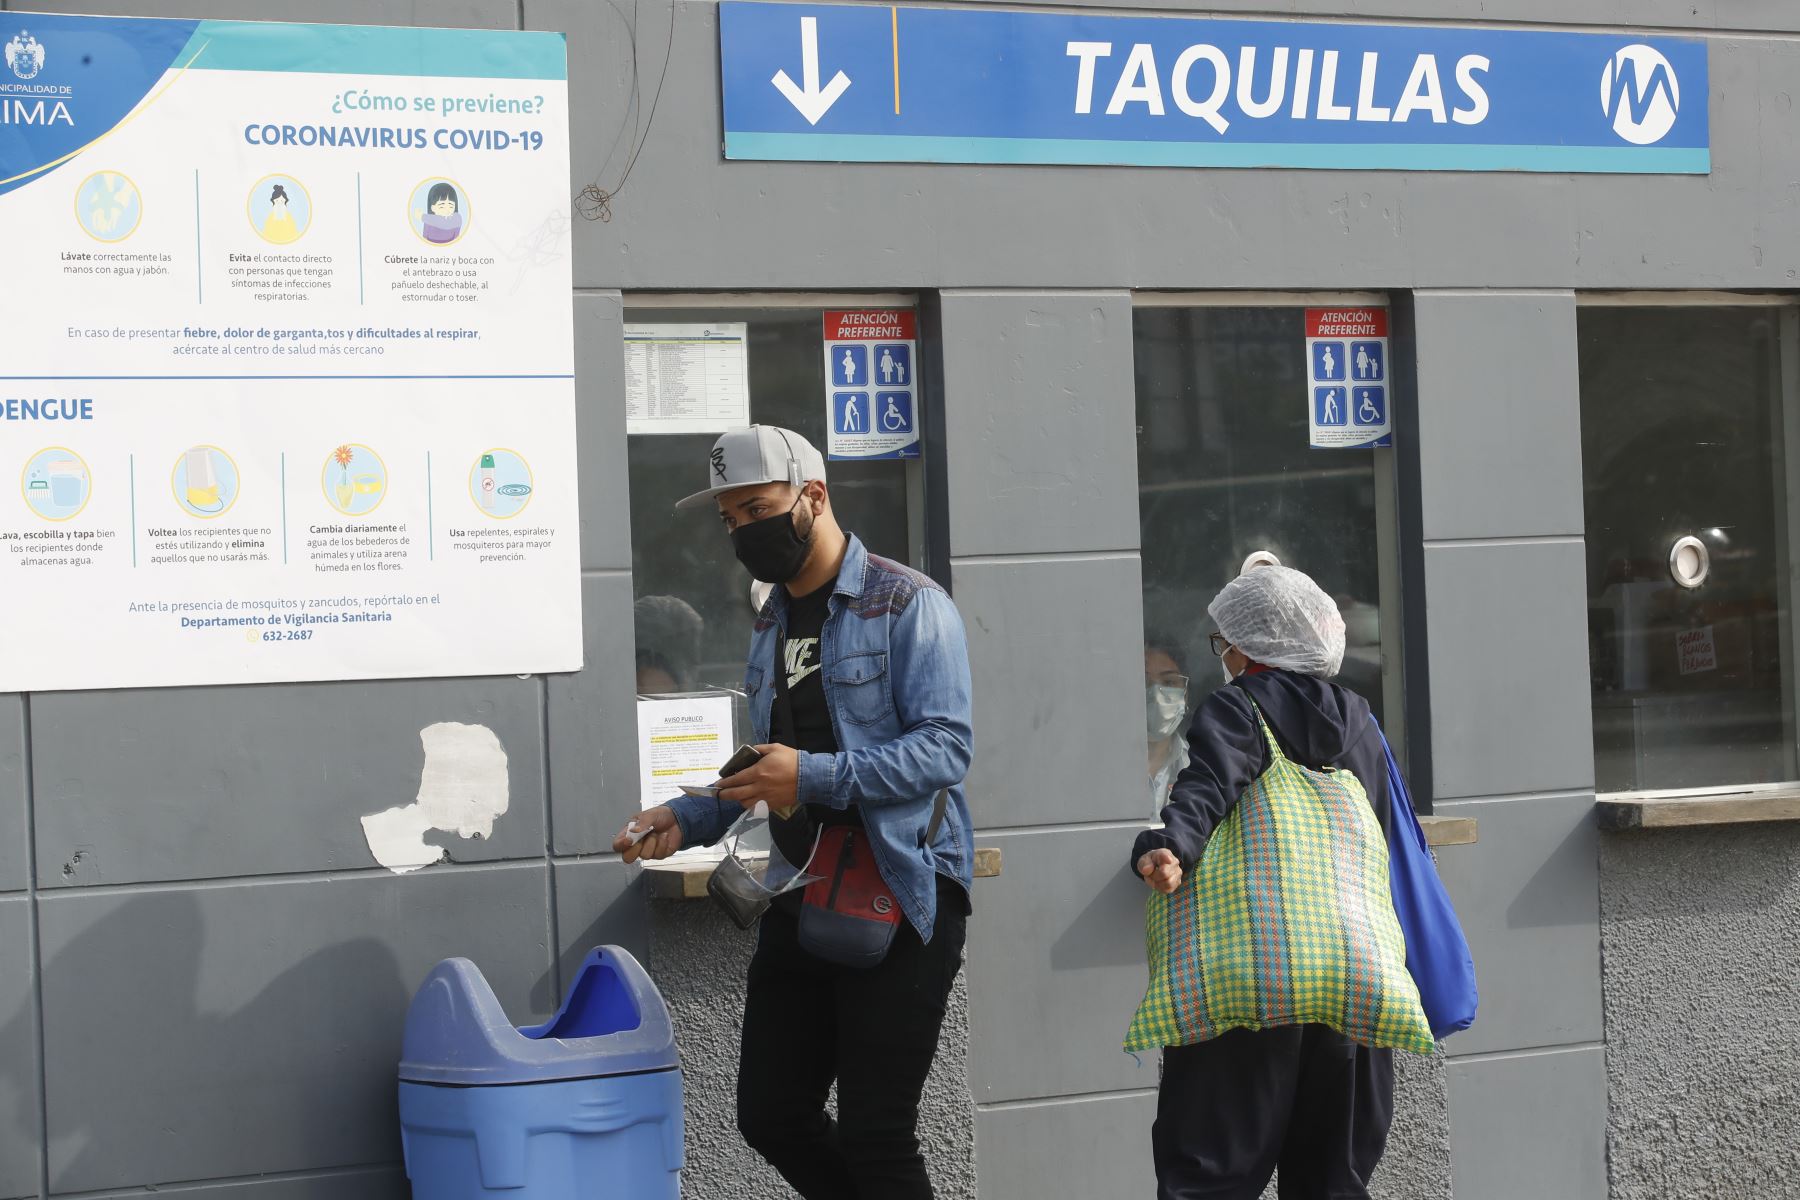 El Metropolitano ha quedado suspendido de manera parcial debido al paro de concesionarios por falta de pago de subsidios. Foto: ANDINA/Juan Carlos Guzmán